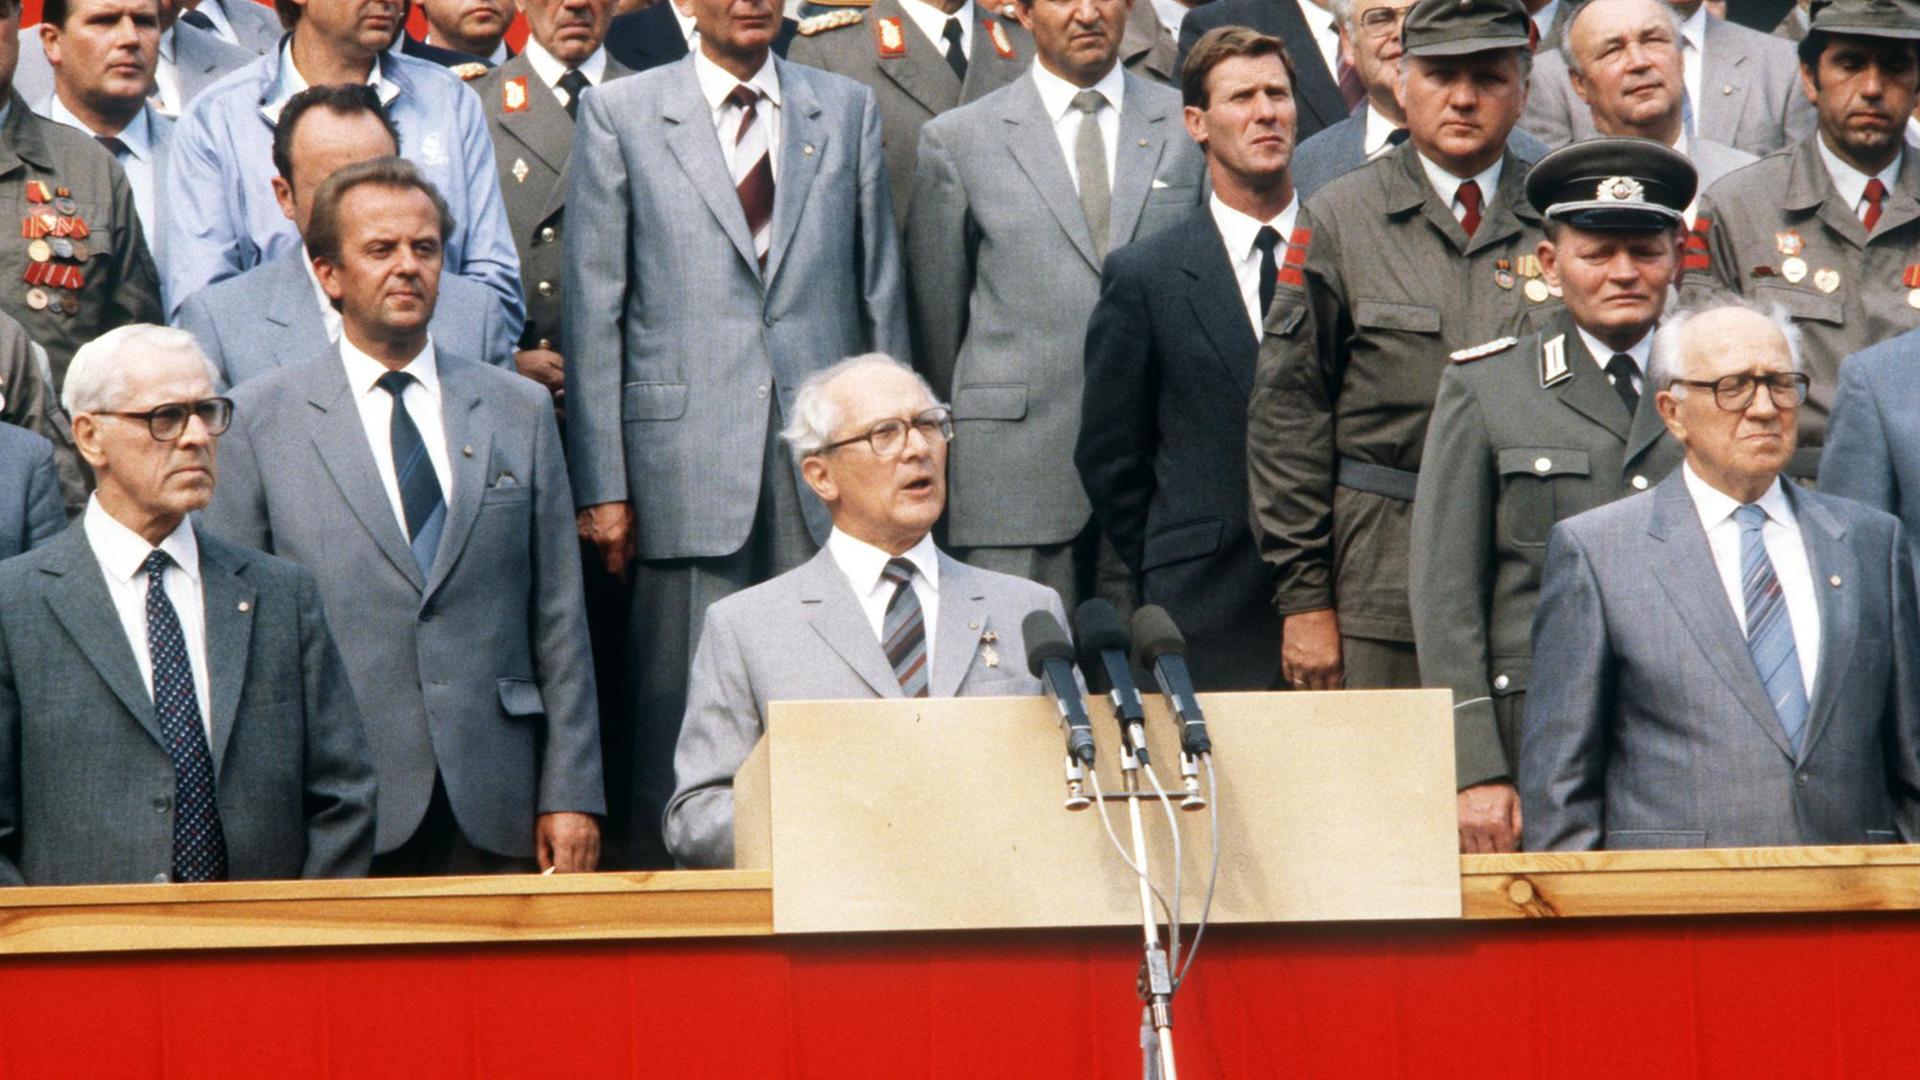 Der DDR-Partei- und Staatschef Erich Honecker bei seiner Rede anläßlich einer Parade in der Karl-Marx-Allee in Berlin (Ost) zum 25. Jahrestages des Baus des "antifaschistischen Schutzwalles", aufgenommen am 13.08.1986.